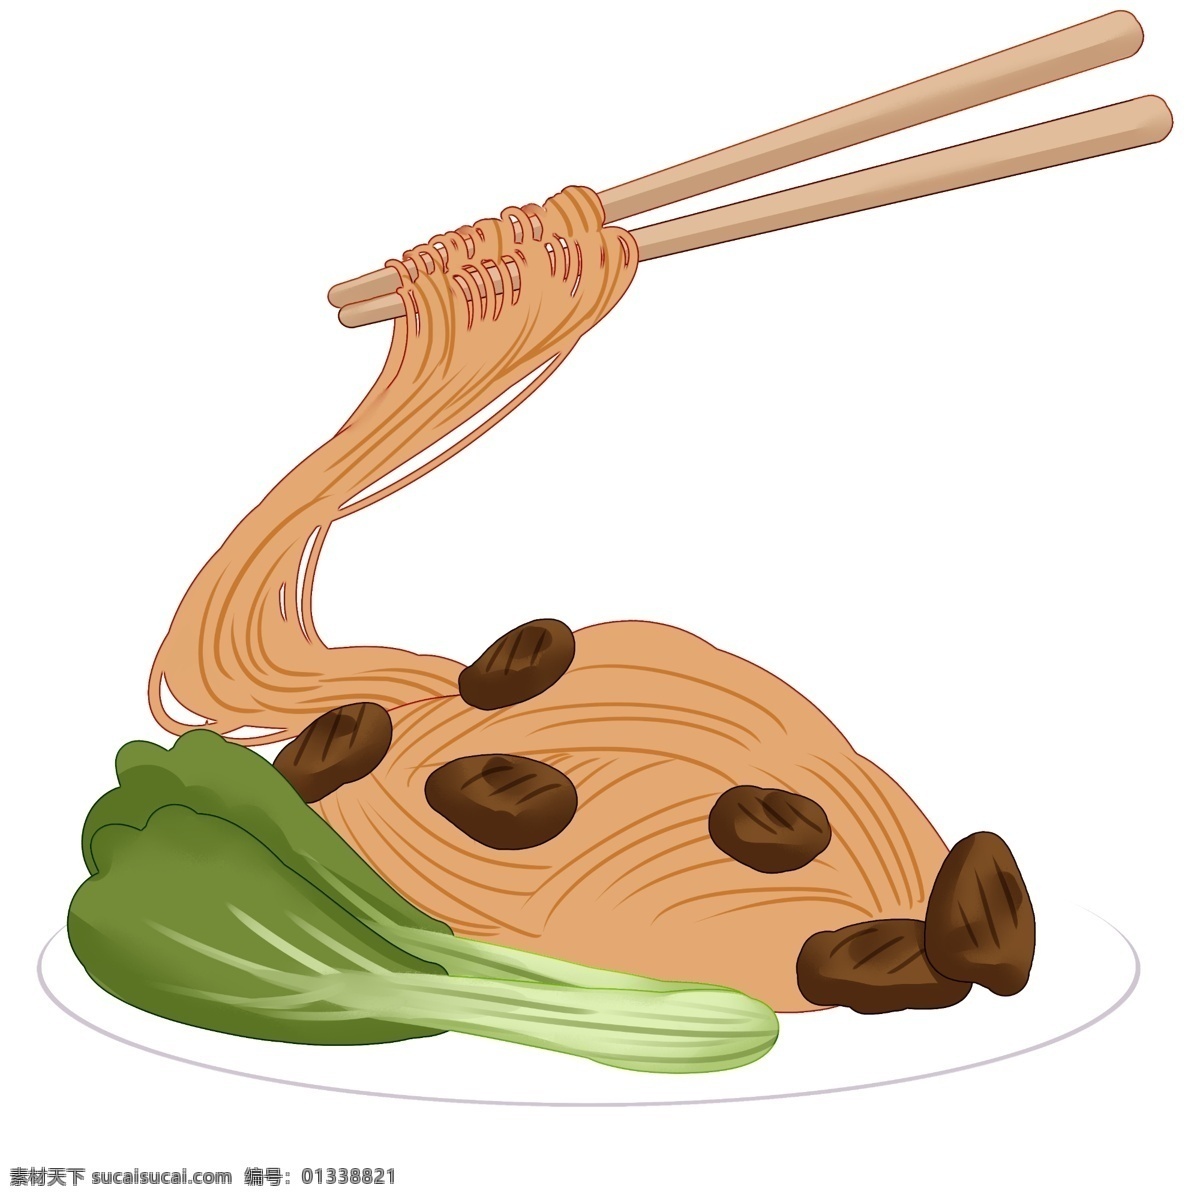 筷子 夹 面条 插画 面条美食 阳春面 挂面 面食 白水面 食物美食 筷子夹起面条 一碗热面